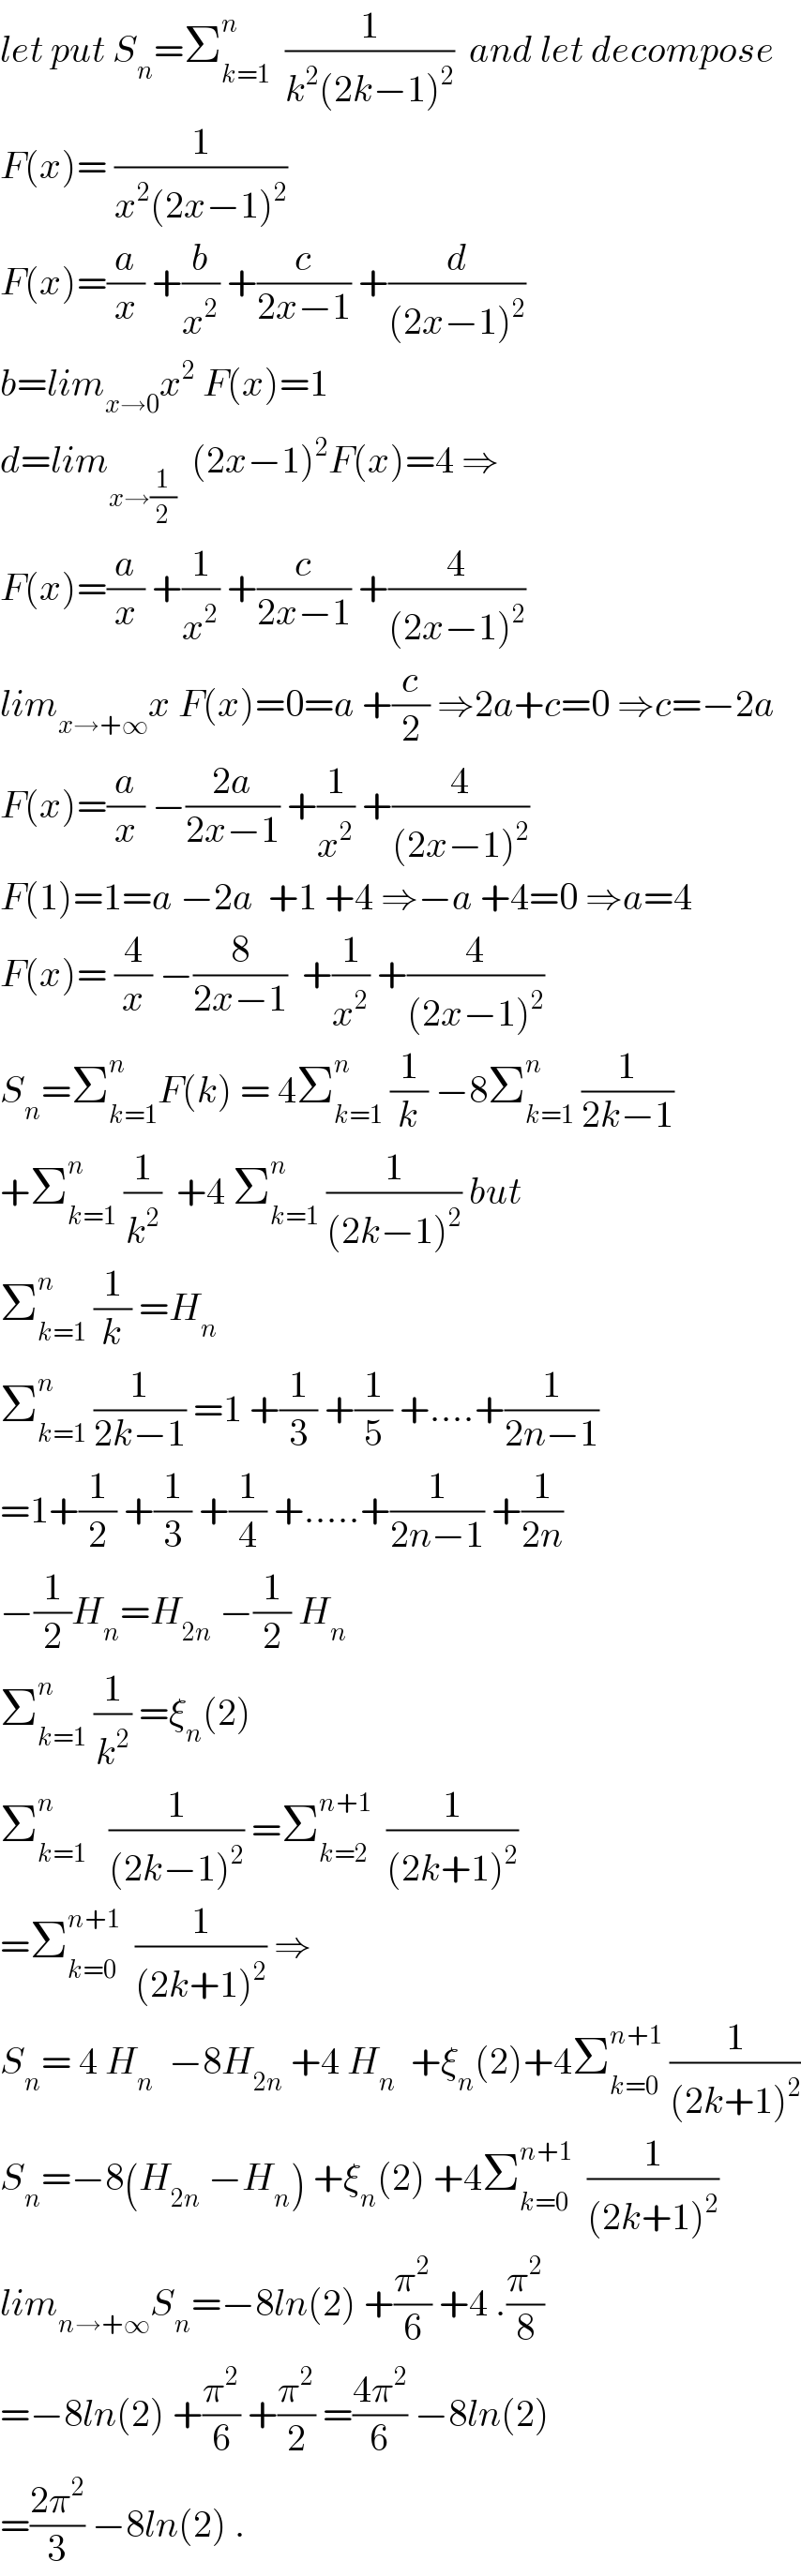 let put S_n =Σ_(k=1) ^n   (1/(k^2 (2k−1)^2 ))  and let decompose  F(x)= (1/(x^2 (2x−1)^2 ))  F(x)=(a/x) +(b/x^2 ) +(c/(2x−1)) +(d/((2x−1)^2 ))  b=lim_(x→0) x^2  F(x)=1  d=lim_(x→(1/2))   (2x−1)^2 F(x)=4 ⇒  F(x)=(a/x) +(1/x^2 ) +(c/(2x−1)) +(4/((2x−1)^2 ))  lim_(x→+∞) x F(x)=0=a +(c/2) ⇒2a+c=0 ⇒c=−2a  F(x)=(a/x) −((2a)/(2x−1)) +(1/x^2 ) +(4/((2x−1)^2 ))  F(1)=1=a −2a  +1 +4 ⇒−a +4=0 ⇒a=4  F(x)= (4/x) −(8/(2x−1))  +(1/x^2 ) +(4/((2x−1)^2 ))  S_n =Σ_(k=1) ^n F(k) = 4Σ_(k=1) ^n  (1/k) −8Σ_(k=1) ^n  (1/(2k−1))  +Σ_(k=1) ^n  (1/k^2 )  +4 Σ_(k=1) ^n  (1/((2k−1)^2 )) but  Σ_(k=1) ^n  (1/k) =H_n   Σ_(k=1) ^n  (1/(2k−1)) =1 +(1/3) +(1/5) +....+(1/(2n−1))  =1+(1/2) +(1/3) +(1/4) +.....+(1/(2n−1)) +(1/(2n))  −(1/2)H_n =H_(2n)  −(1/2) H_n   Σ_(k=1) ^n  (1/k^2 ) =ξ_n (2)  Σ_(k=1) ^n    (1/((2k−1)^2 )) =Σ_(k=2) ^(n+1)   (1/((2k+1)^2 ))  =Σ_(k=0) ^(n+1)   (1/((2k+1)^2 )) ⇒  S_n = 4 H_n   −8H_(2n)  +4 H_n   +ξ_n (2)+4Σ_(k=0) ^(n+1)  (1/((2k+1)^2 ))  S_n =−8(H_(2n)  −H_n ) +ξ_n (2) +4Σ_(k=0) ^(n+1)   (1/((2k+1)^2 ))  lim_(n→+∞) S_n =−8ln(2) +(π^2 /6) +4 .(π^2 /8)  =−8ln(2) +(π^2 /6) +(π^2 /2) =((4π^2 )/6) −8ln(2)  =((2π^2 )/3) −8ln(2) .  